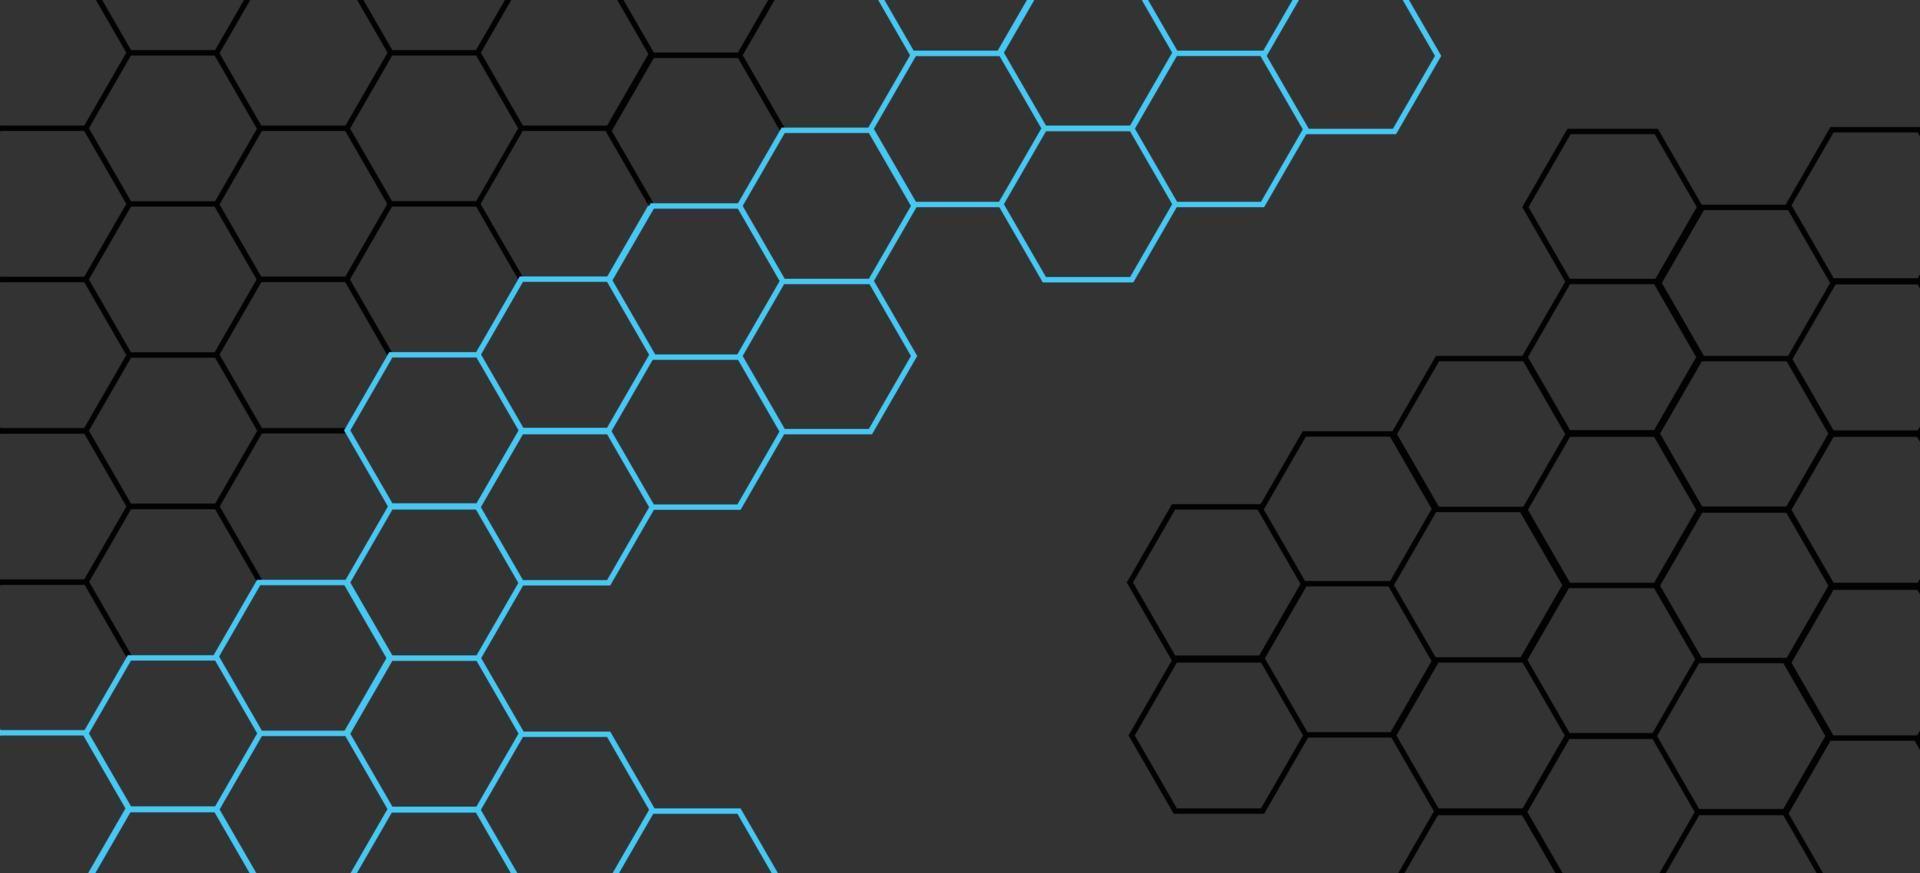 Hexagonal background honeycomb vector